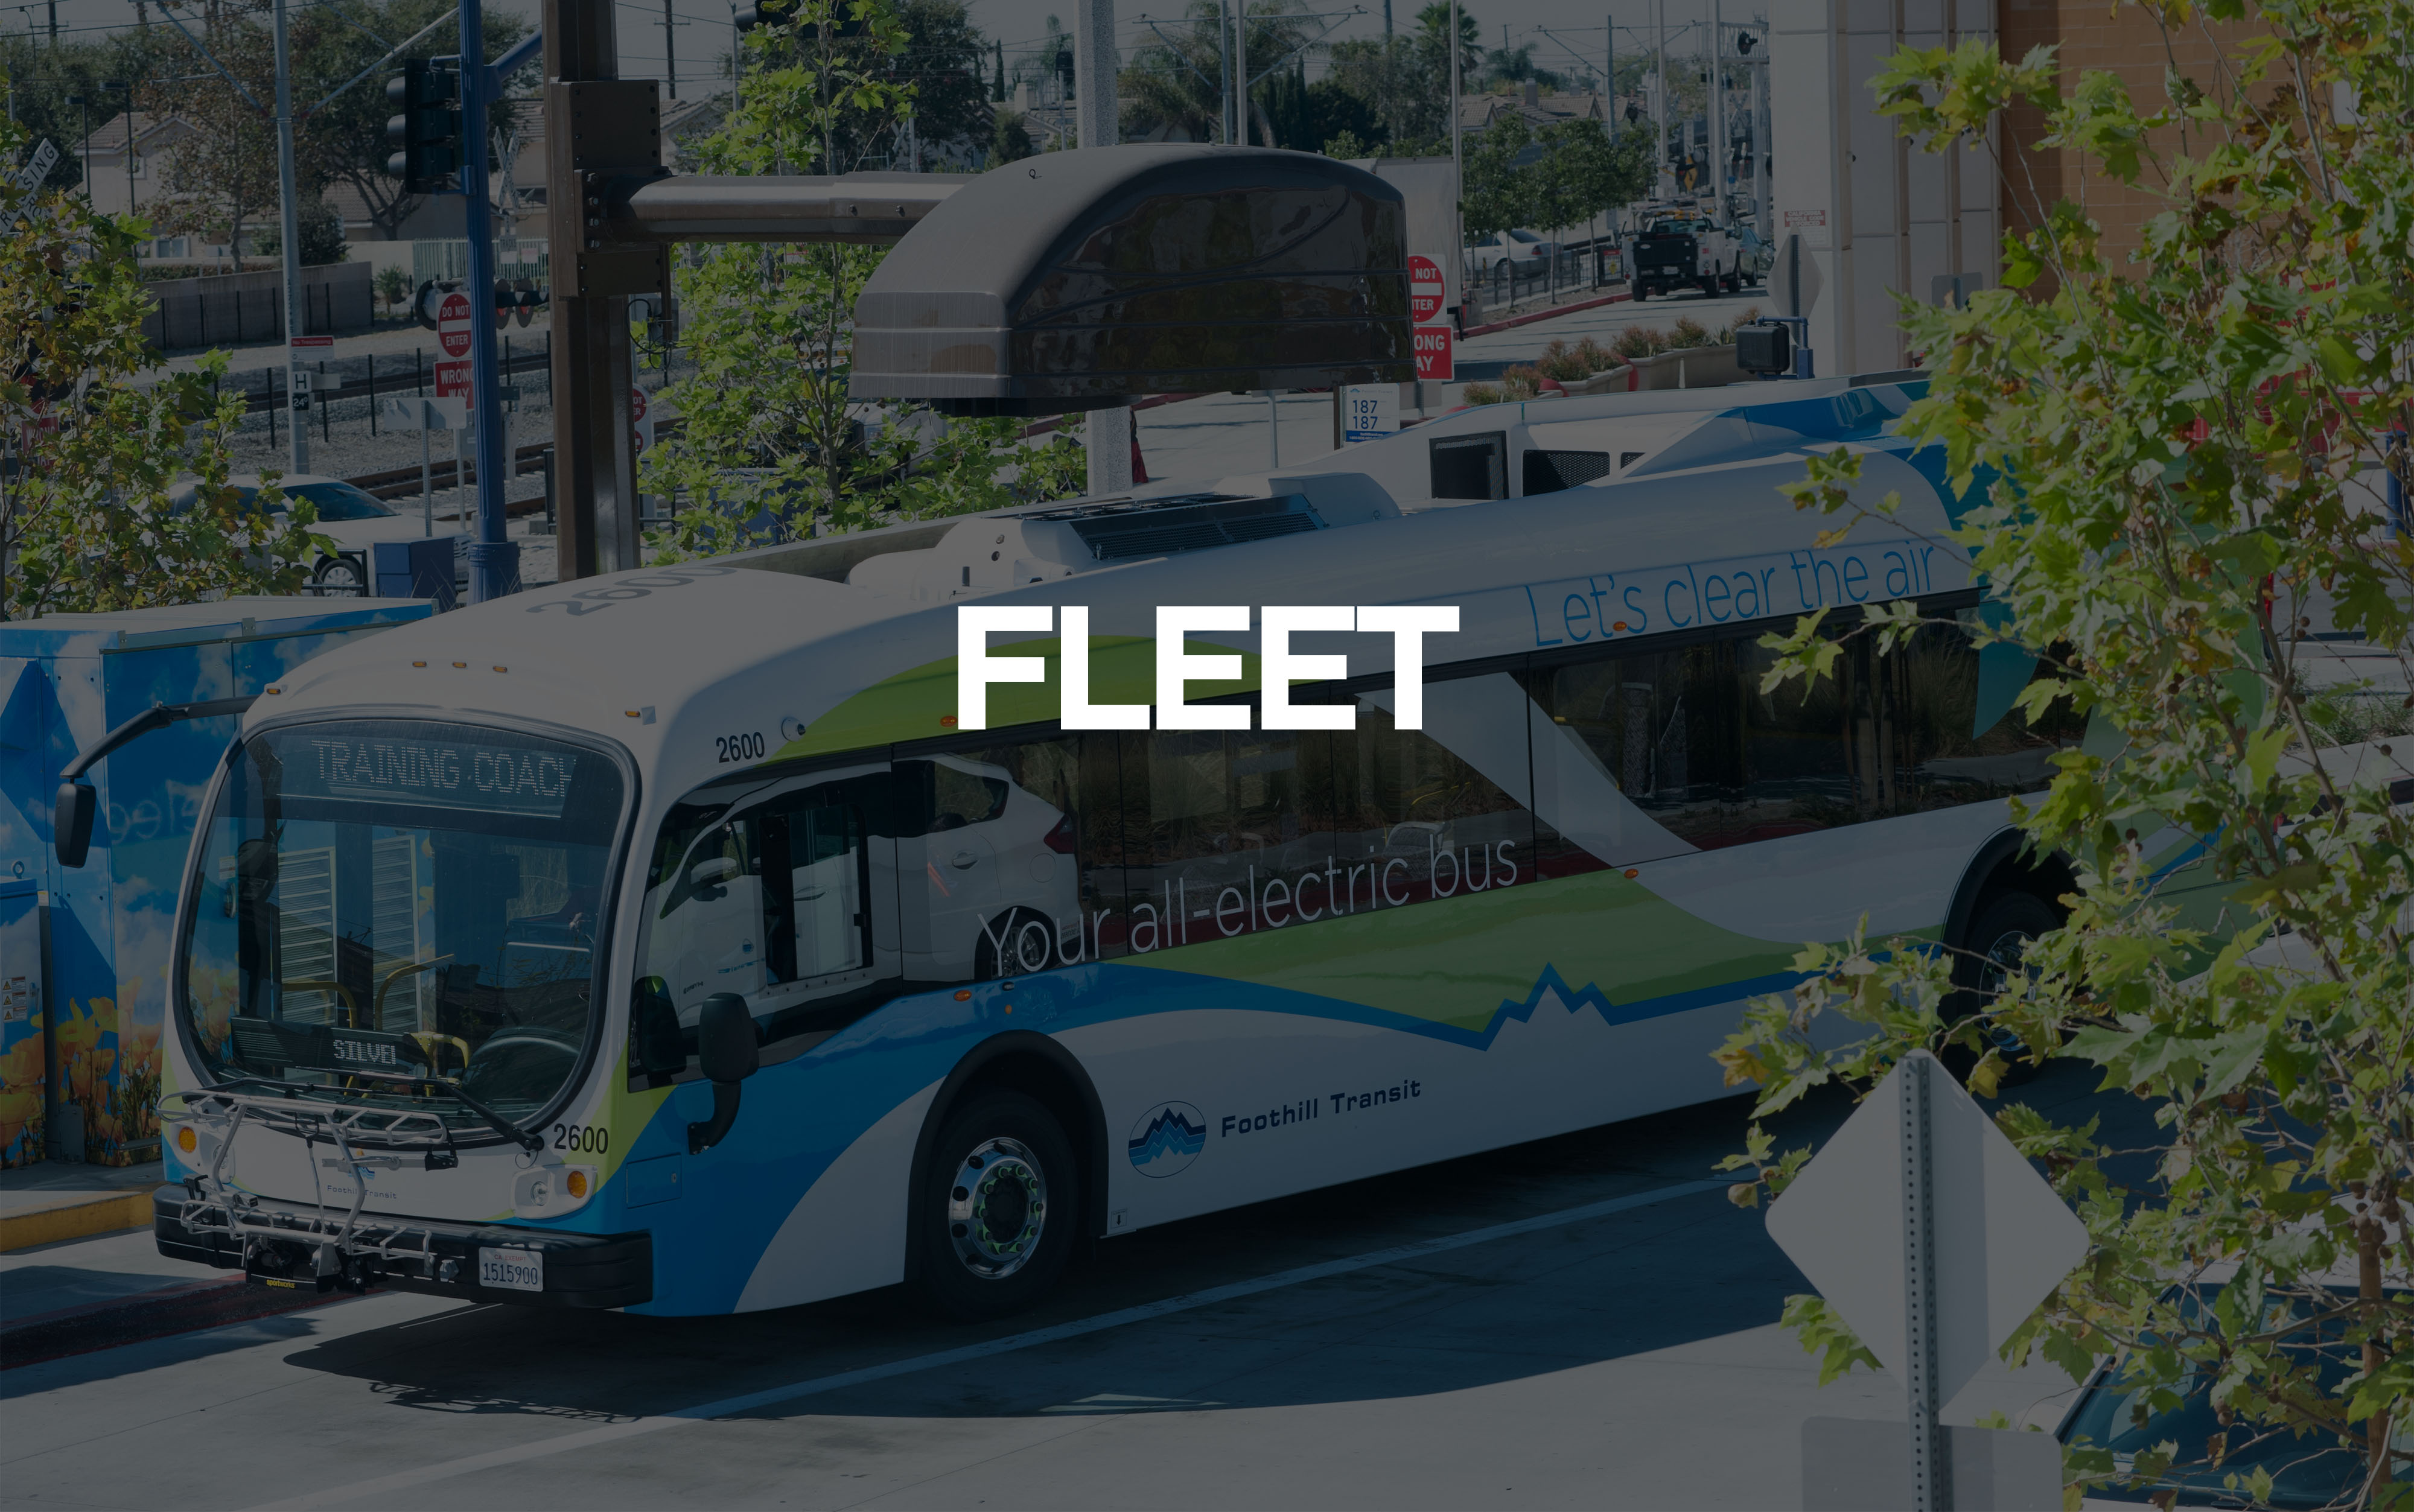 Foothill Bus na may Fleet Text sa Itaas